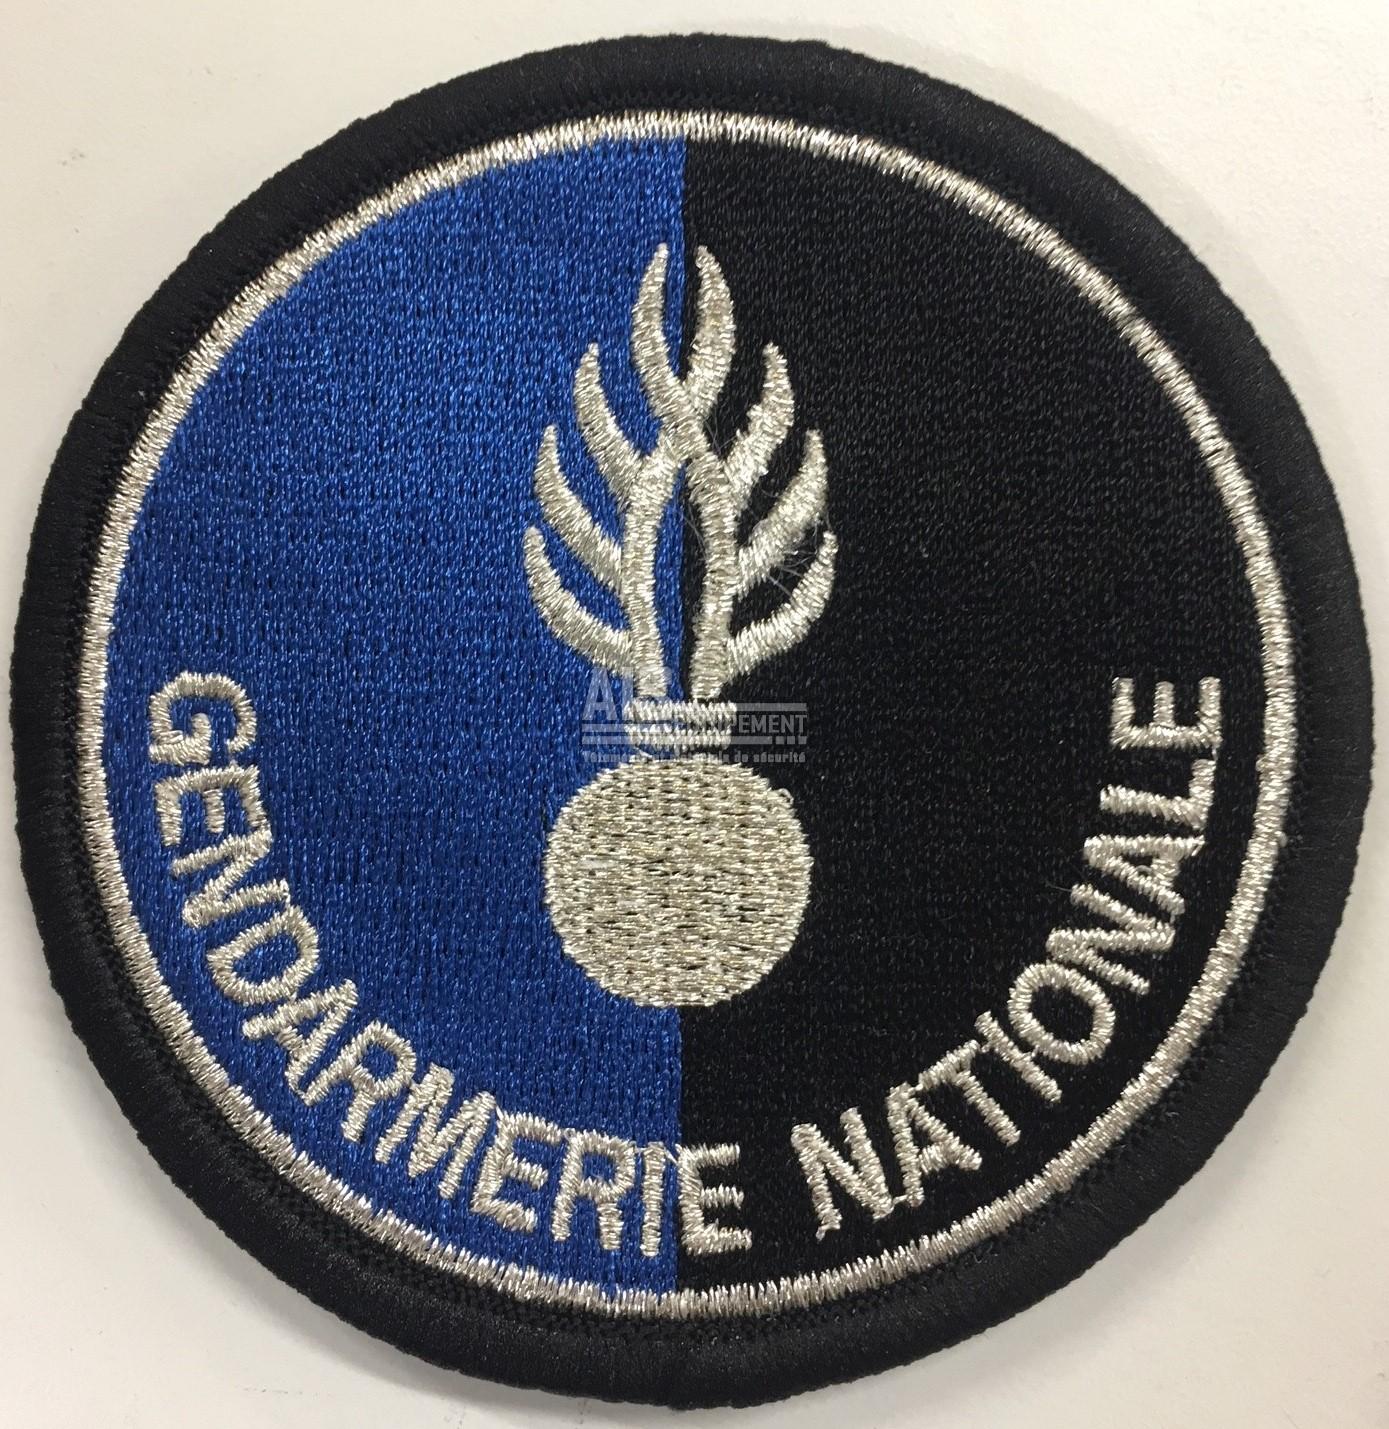 Ecusson Gendarmerie Nationale ecu211 : Equipement armée, police, gendarmerie  - Magasin sécurité à Rennes Ille et Vilaine - AIS Equipement